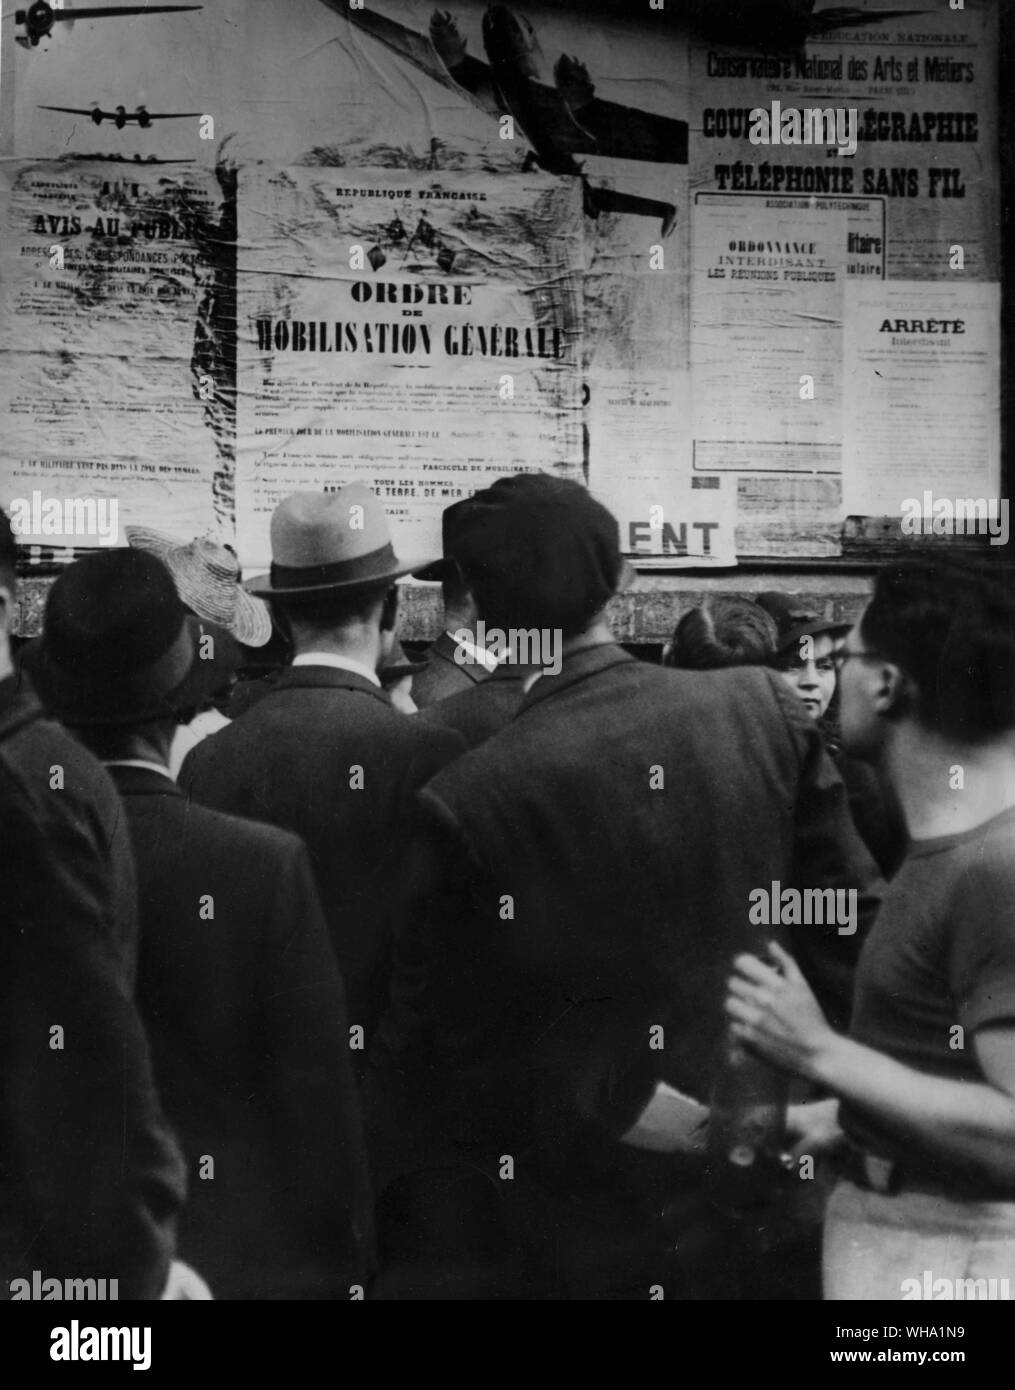 WW2: mobilitazione generale in Francia. I parigini la lettura dell'annuncio di mobilitazione generale in Francia a seguito di invasione della Polonia da parte della Germania. Foto Stock